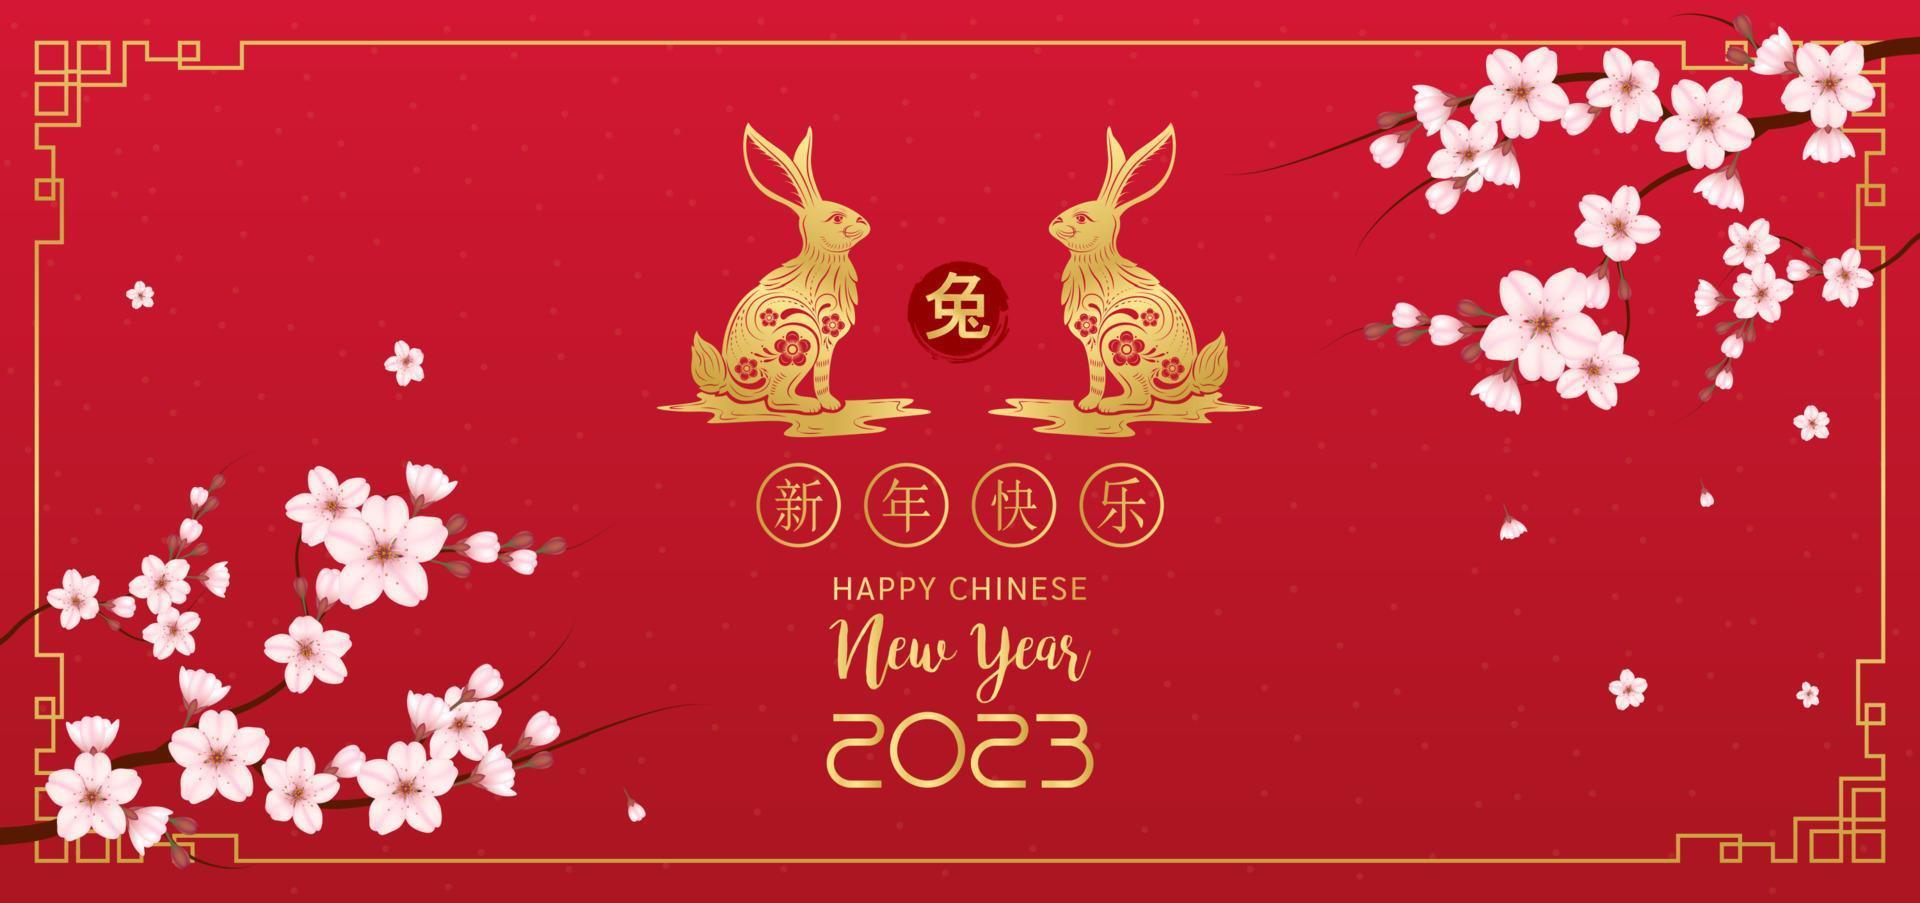 tarjeta feliz año nuevo chino 2023, signo zodiaco conejo sobre fondo rojo. elementos con conejo artesanal y flor de sakura. traducción china feliz año nuevo 2023, año del conejo. eps10 vectoriales. vector